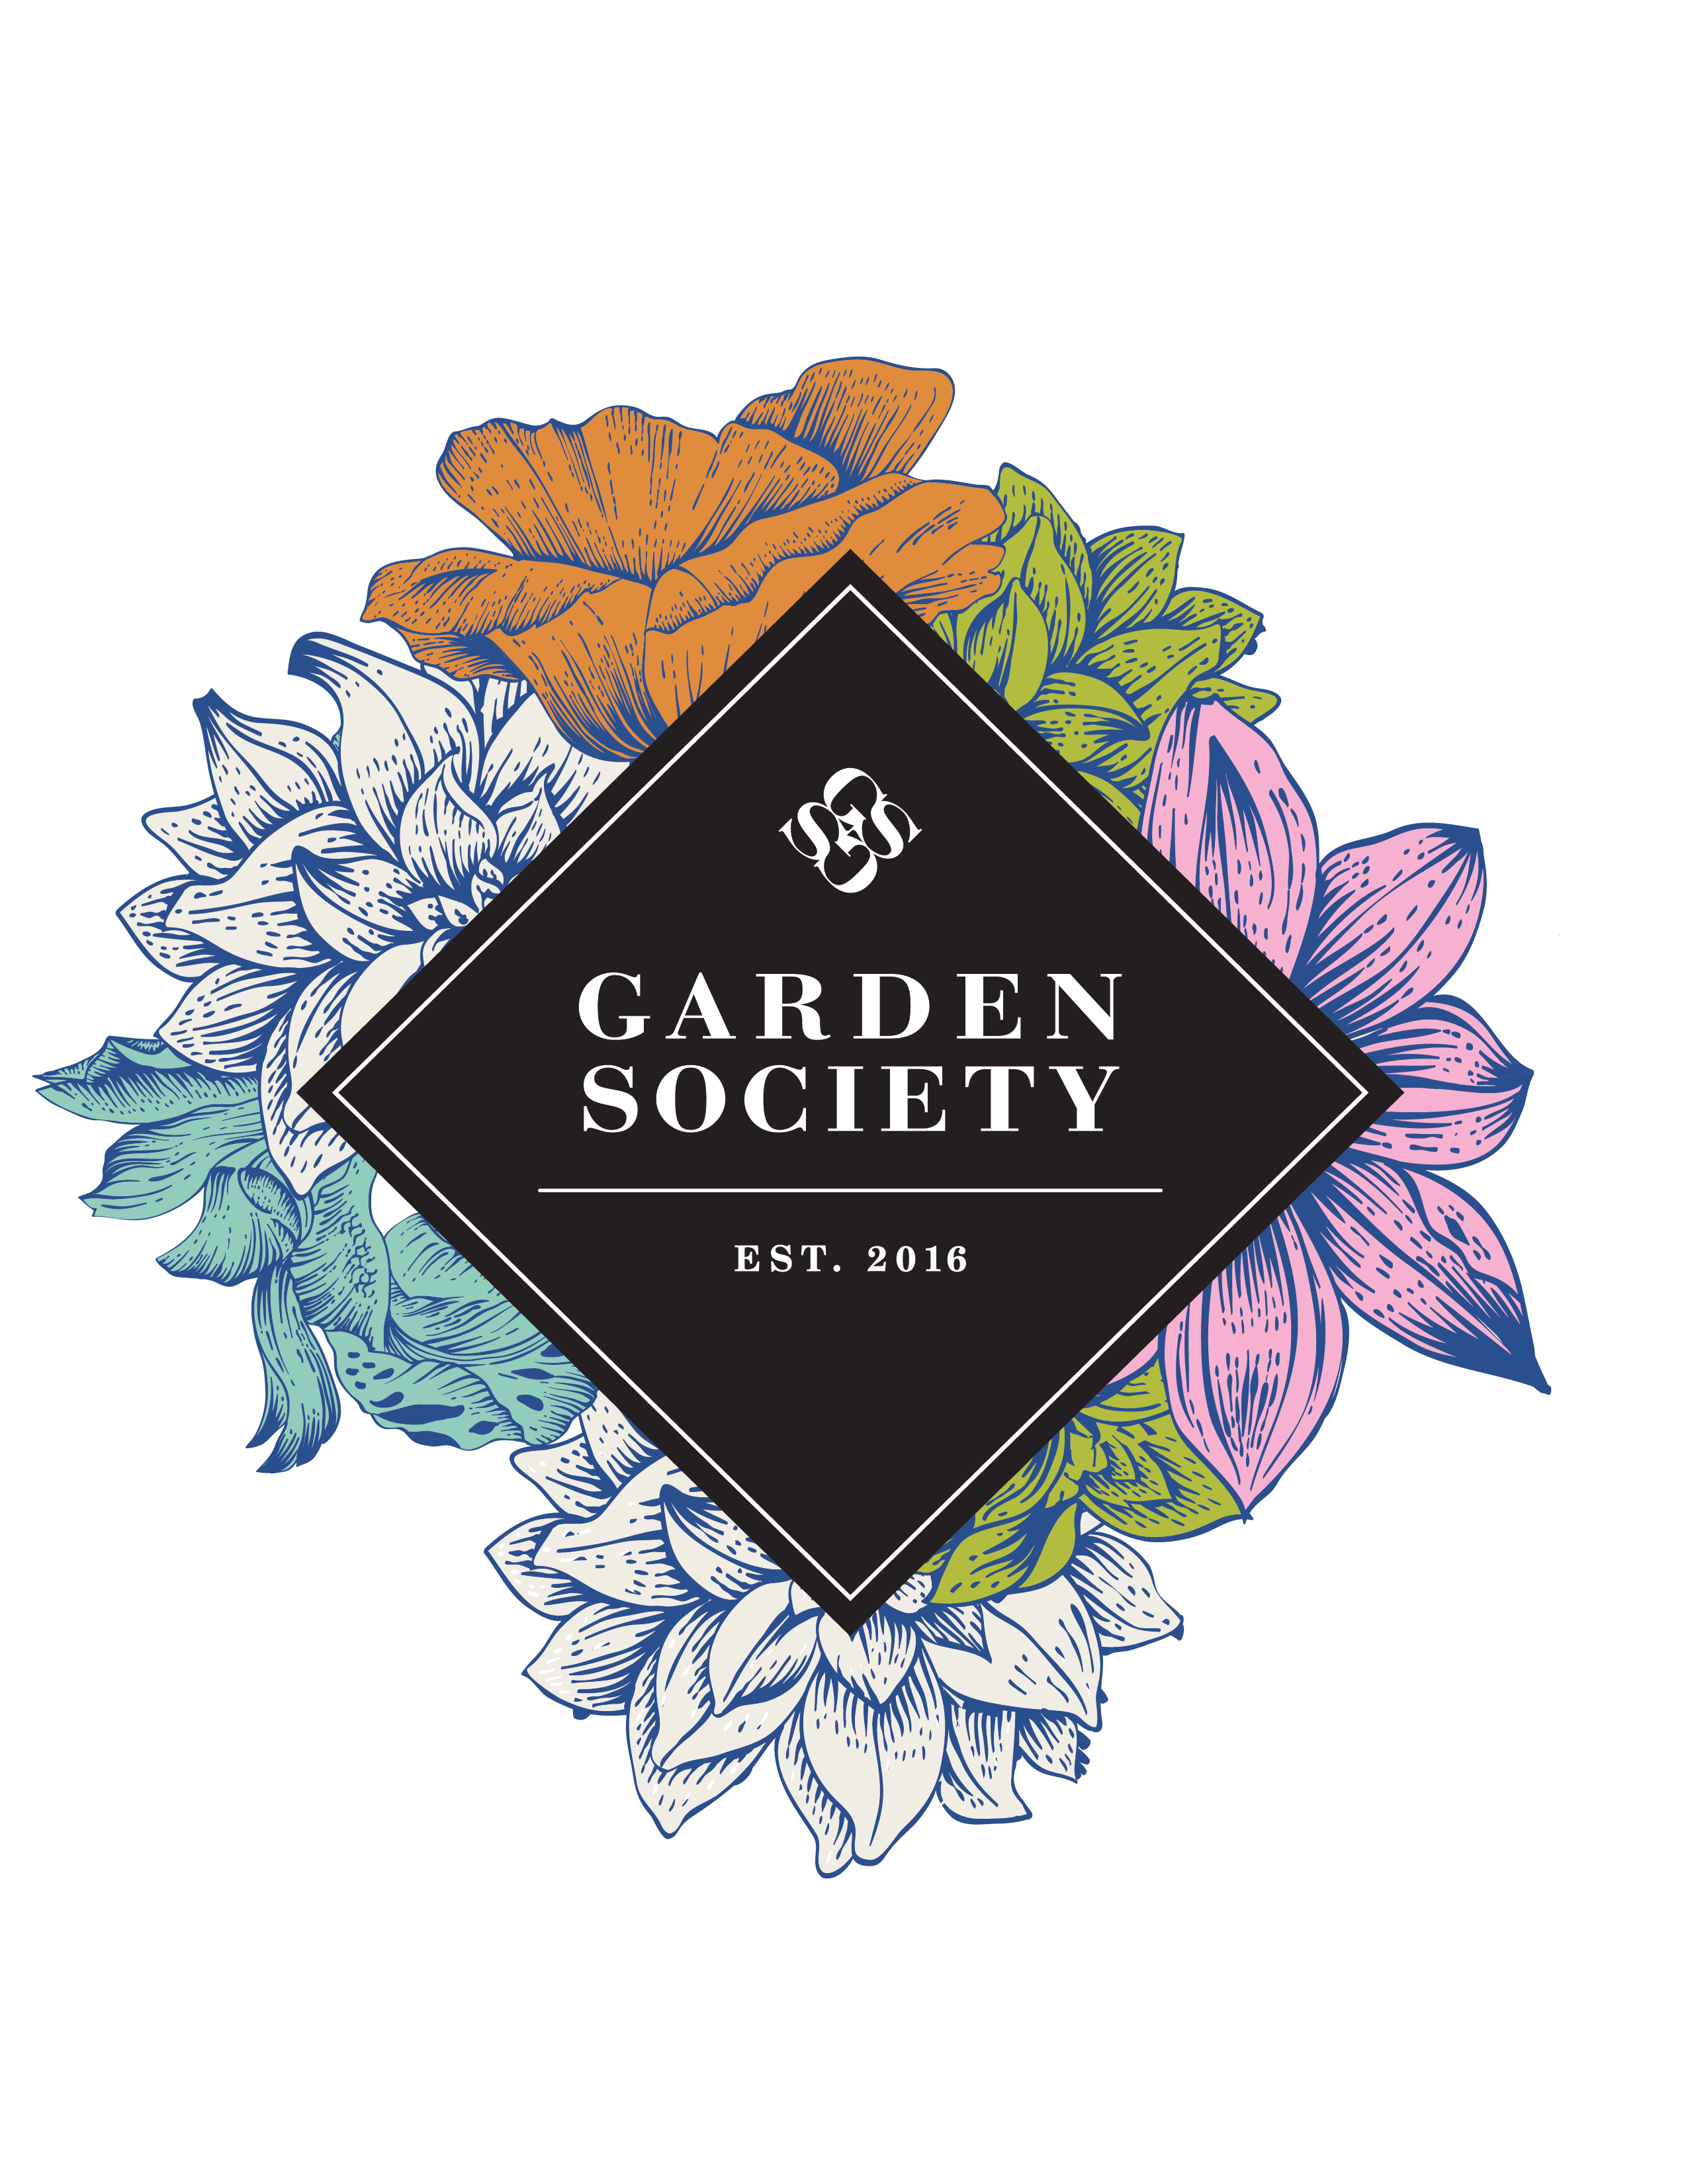 The logo of Garden Society